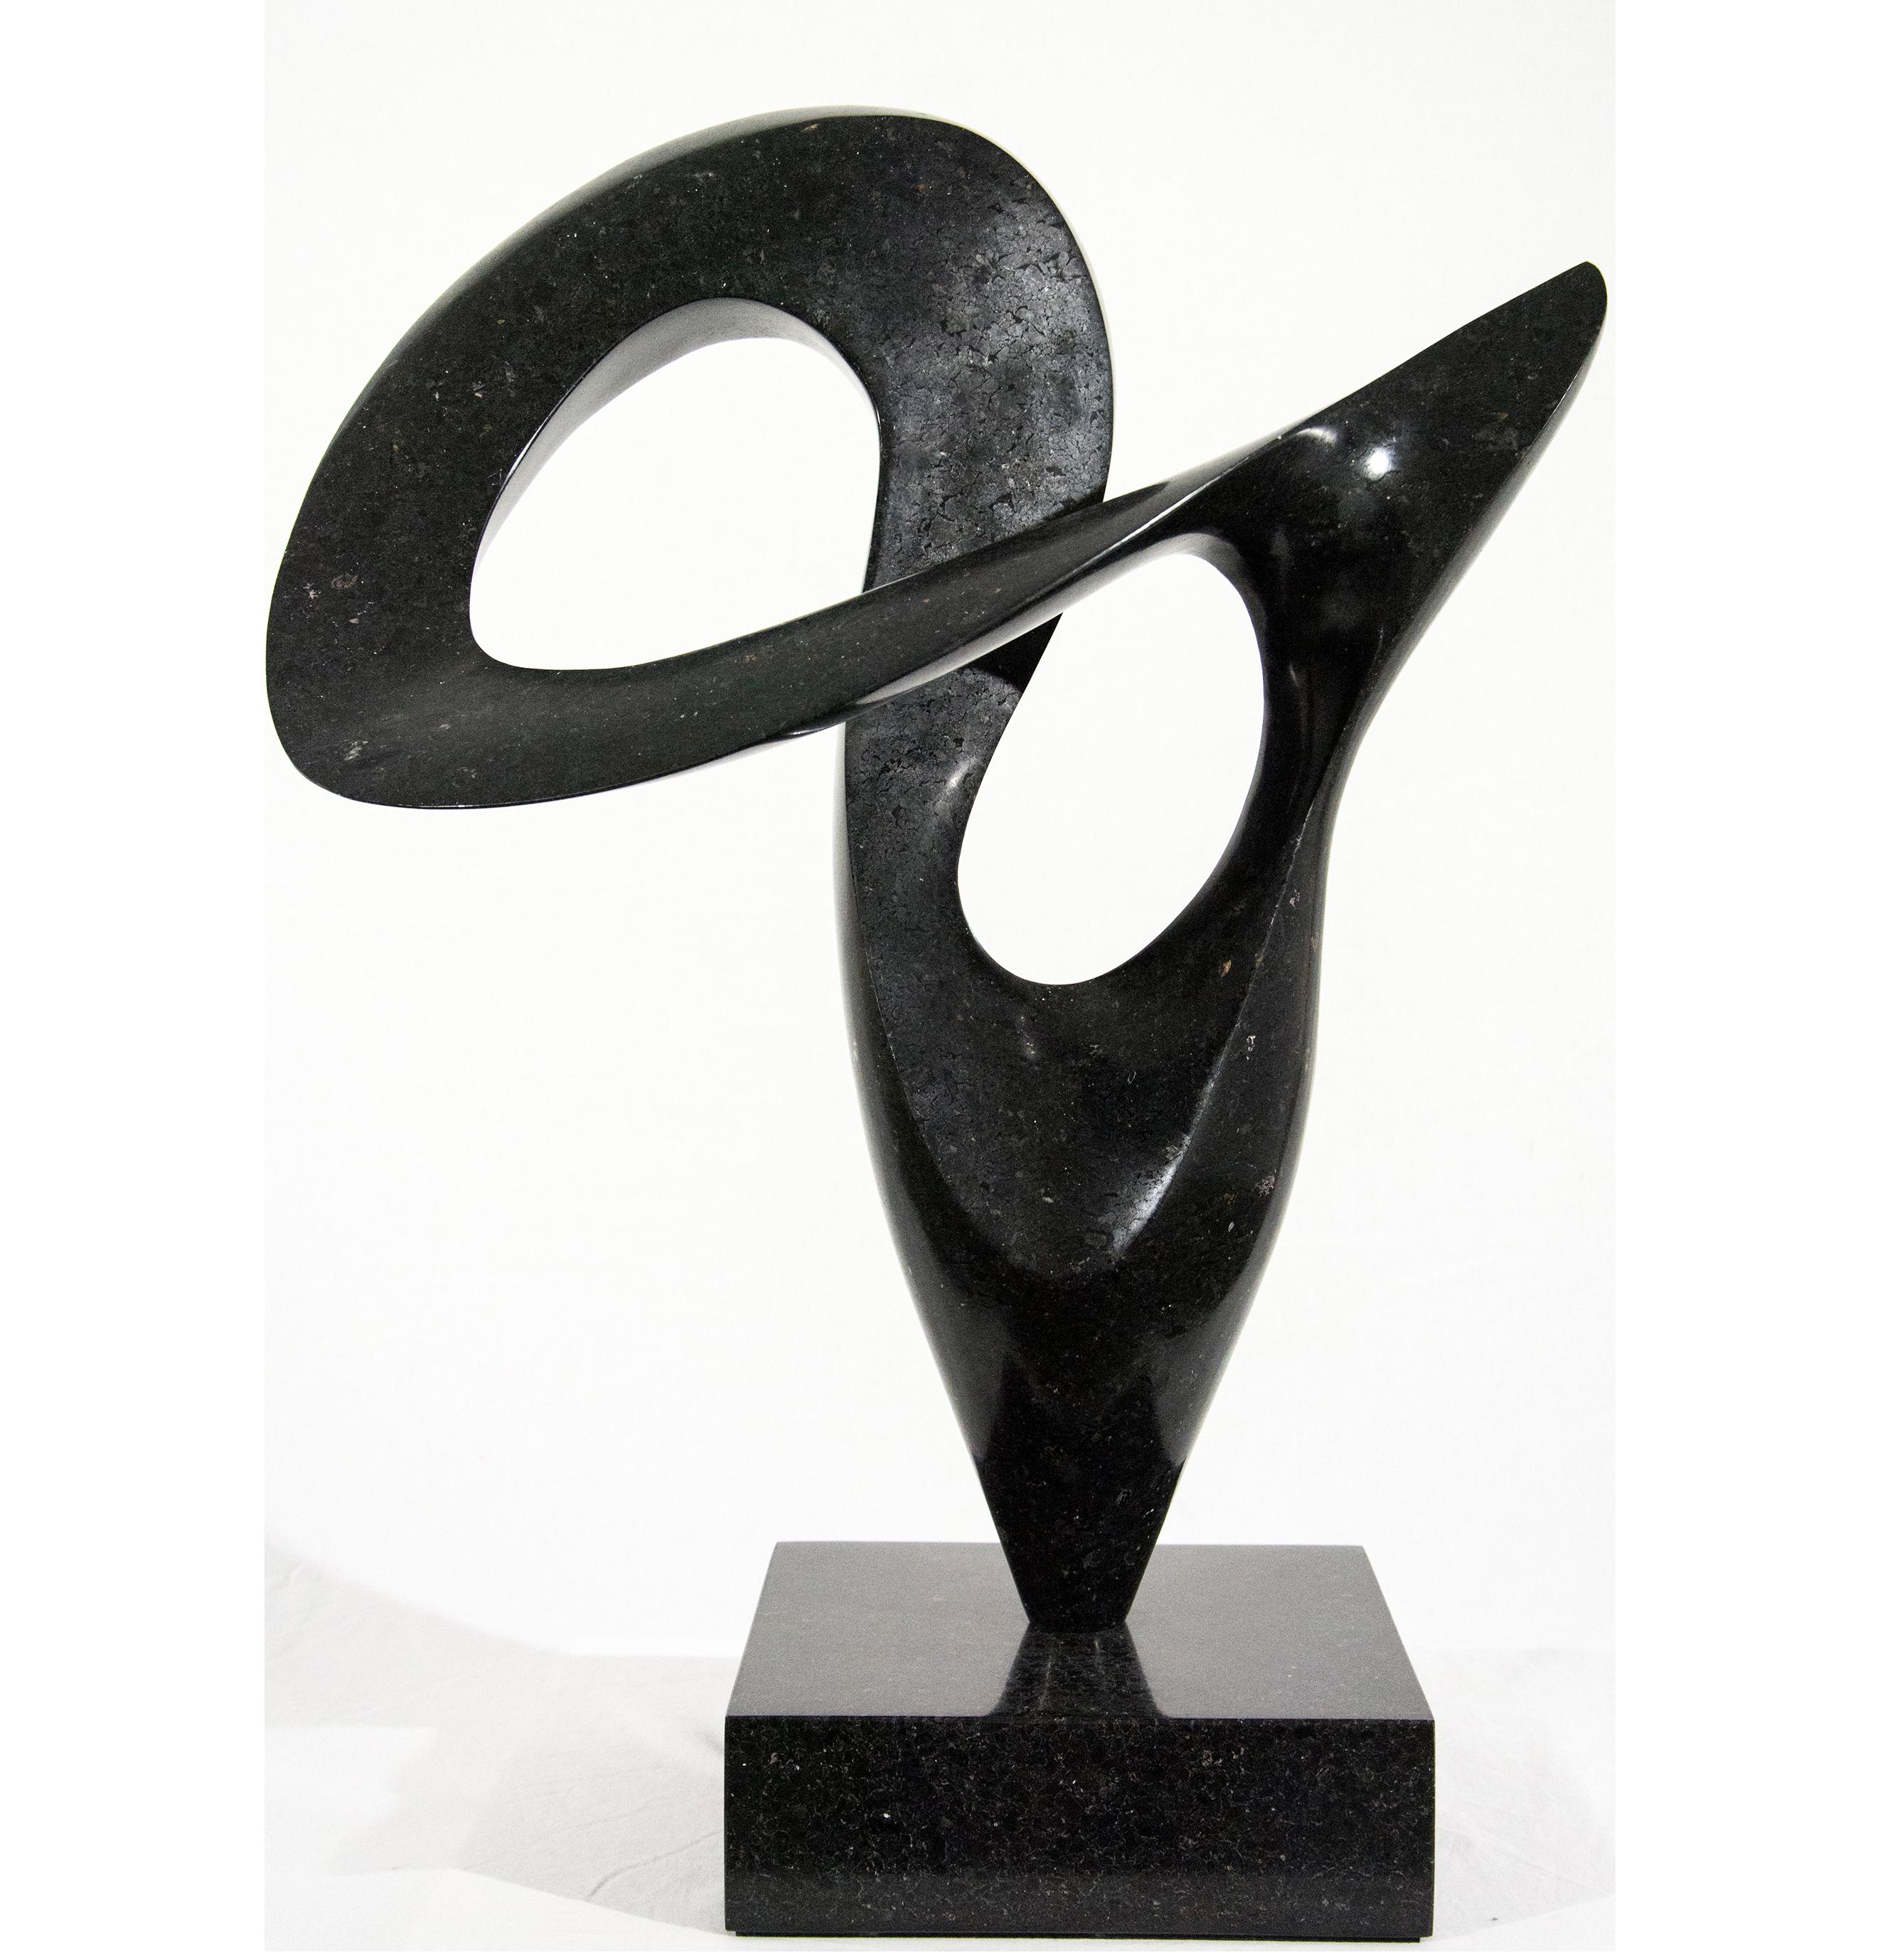 Jeremy Guy Abstract Sculpture – Pirouette 19/50 - glatt, schwarz, Granit, Indoor/Outdoor, abstrakte Skulptur